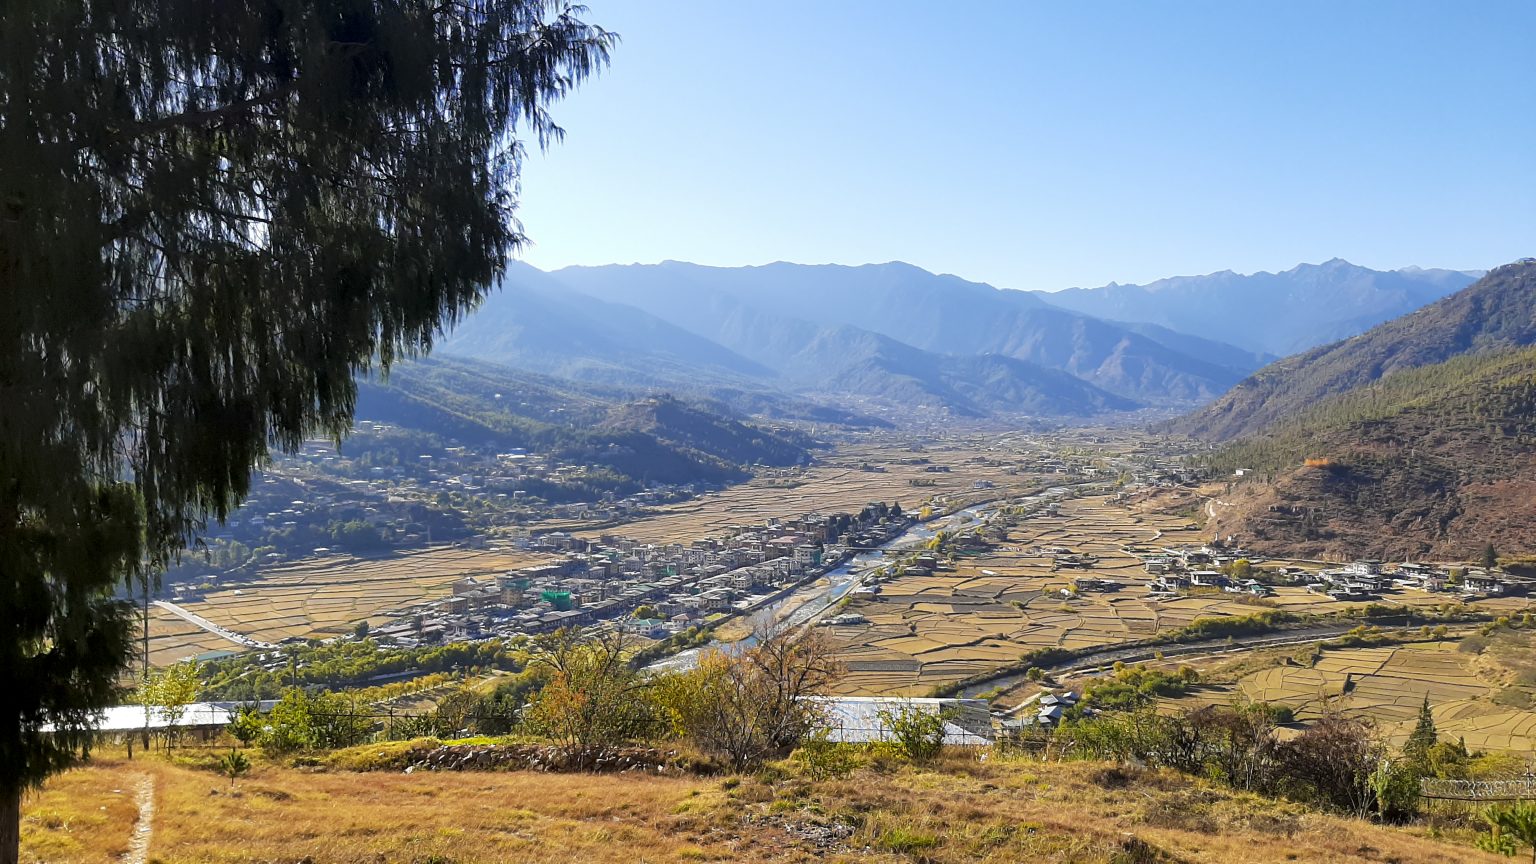 Paro in Bhutan